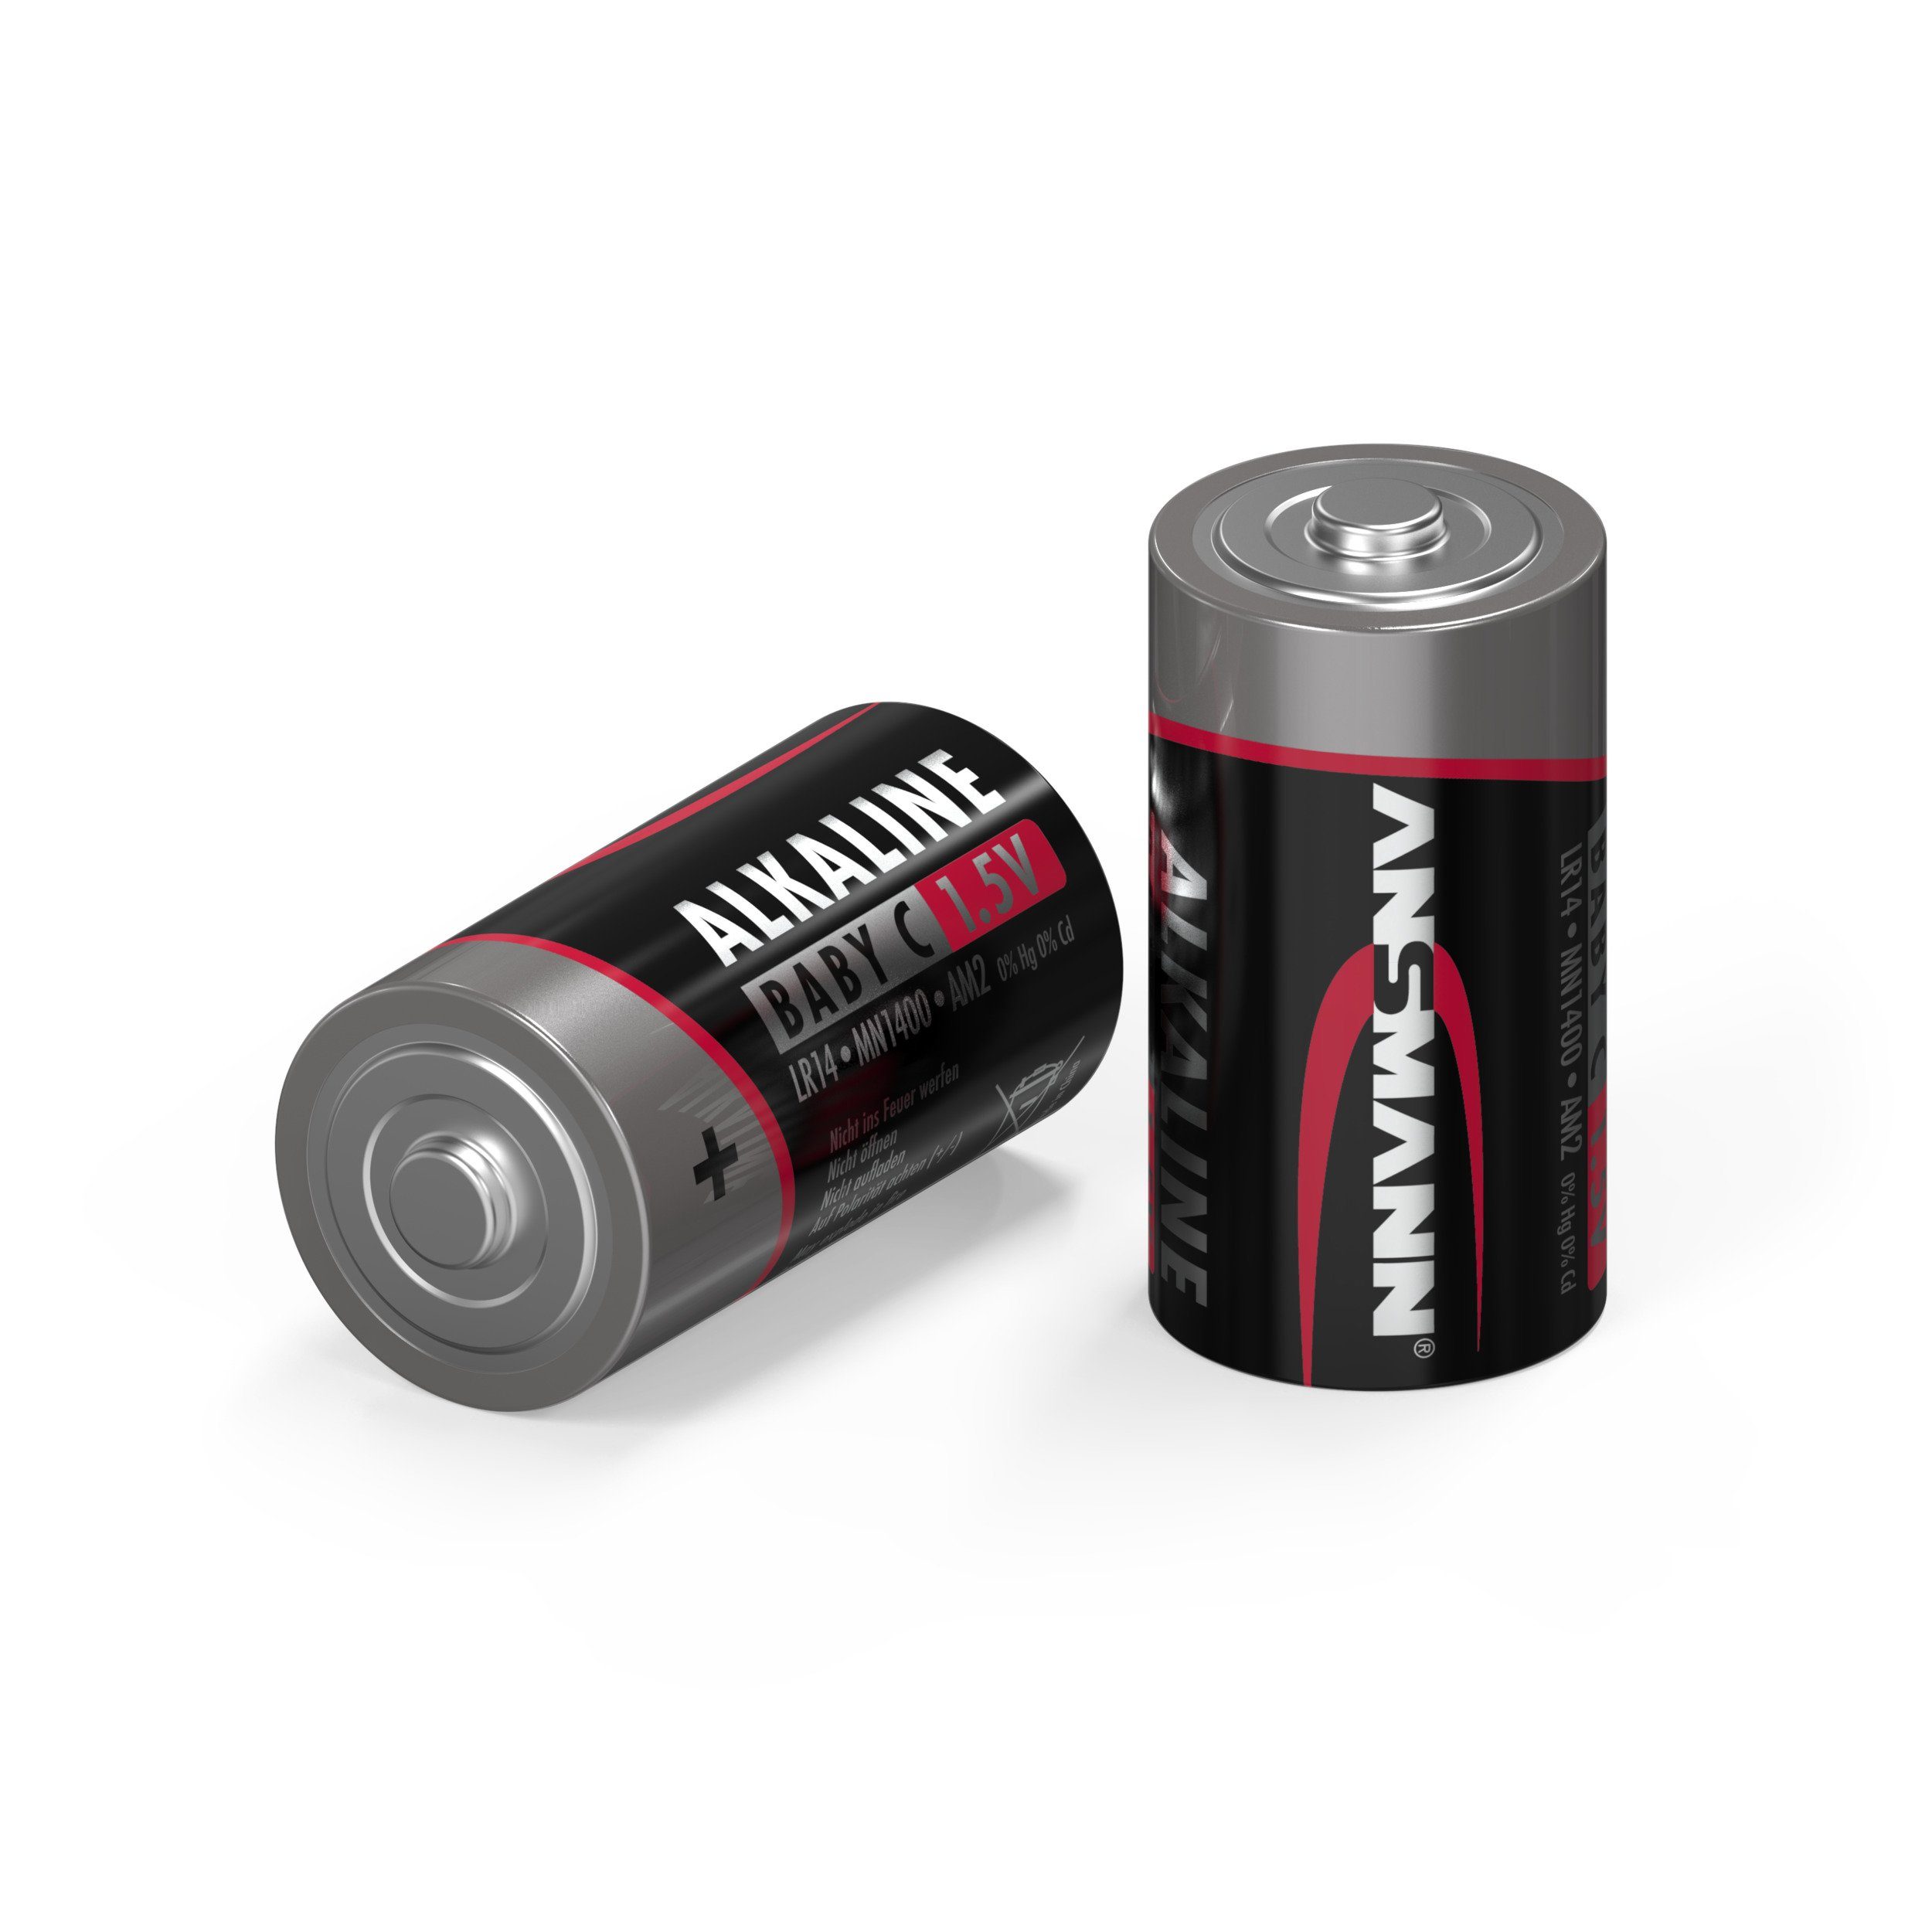 ANSMANN® Ansmann Batterien Baby C LR14 4 Stück 1,5V - Alkaline Batterie  auslaufsicher Batterie